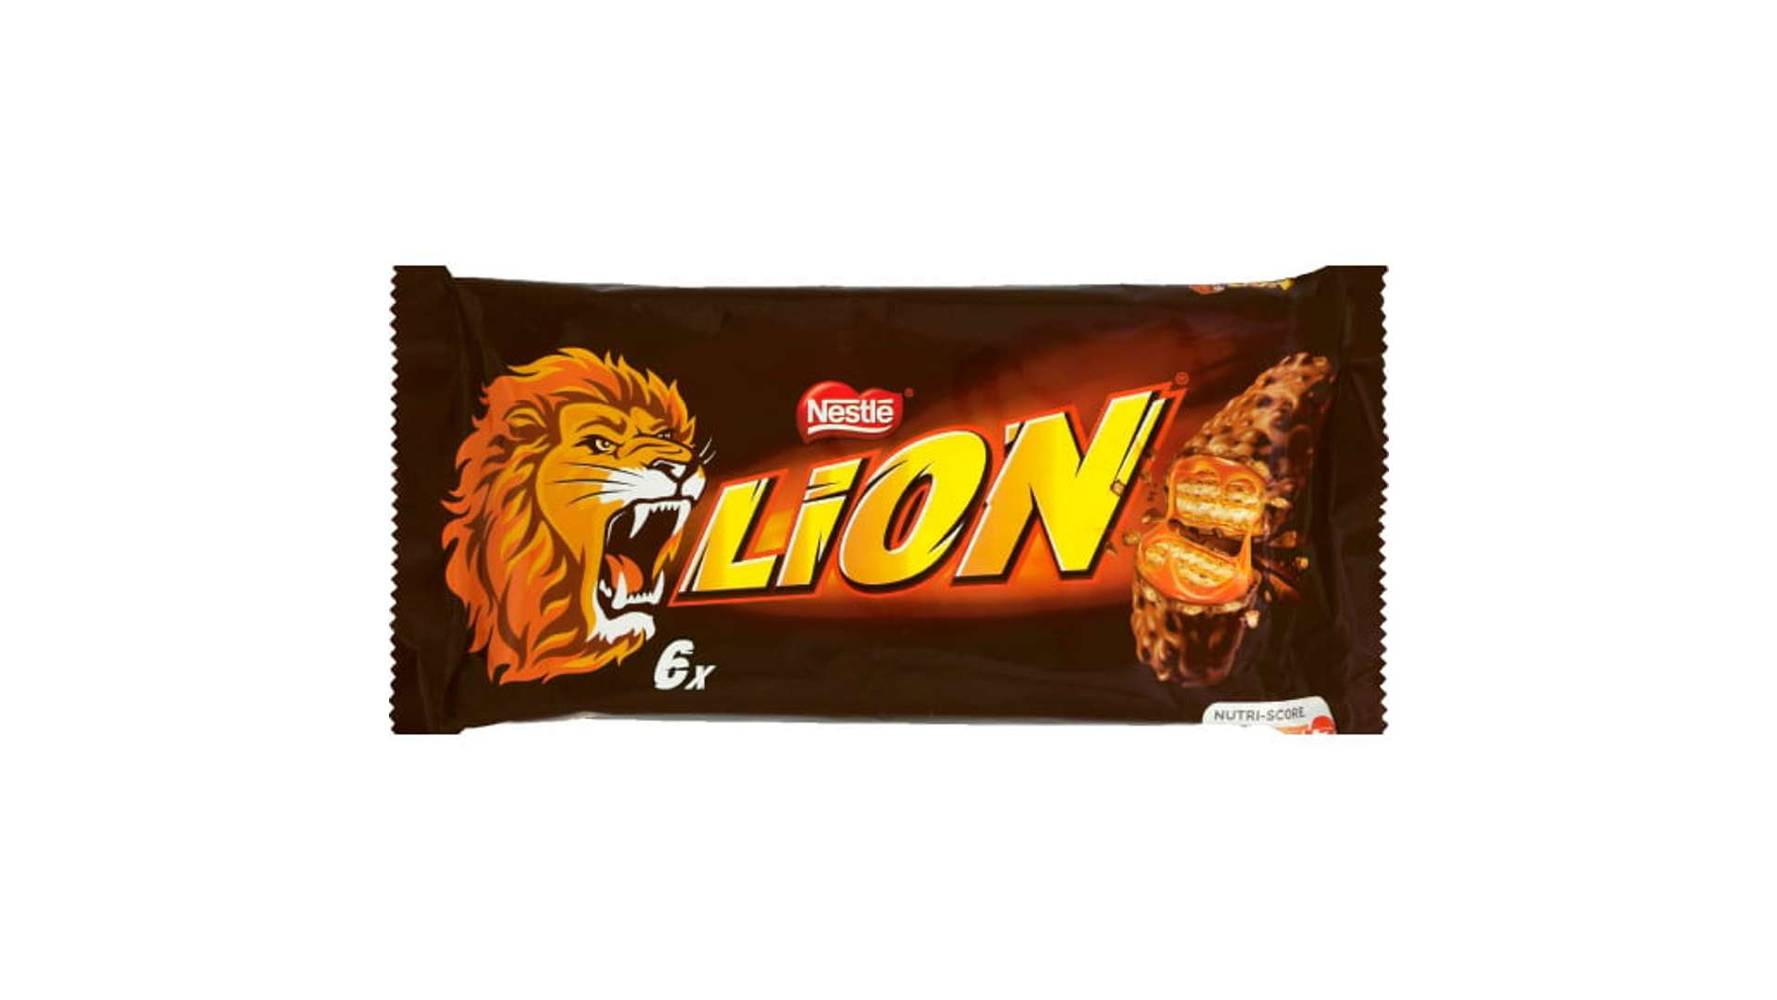 Lion Lion x6 Le sachet de 252g Les 6 barres, 252g